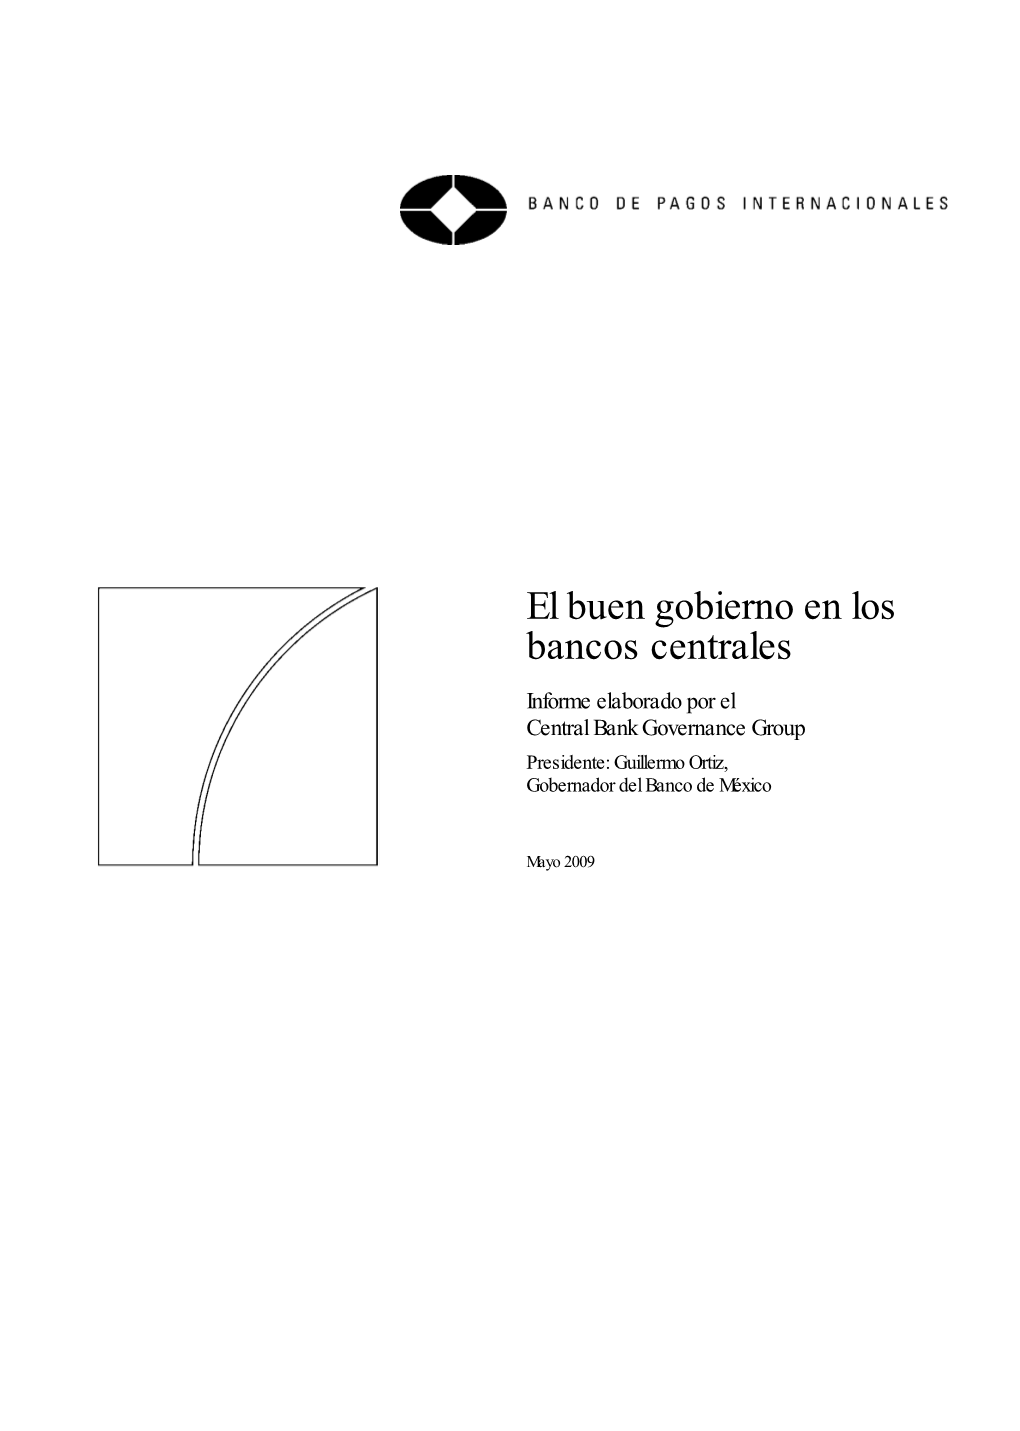 El Buen Gobierno En Los Bancos Centrales Informe Elaborado Por El Central Bank Governance Group Presidente: Guillermo Ortiz, Gobernador Del Banco De México